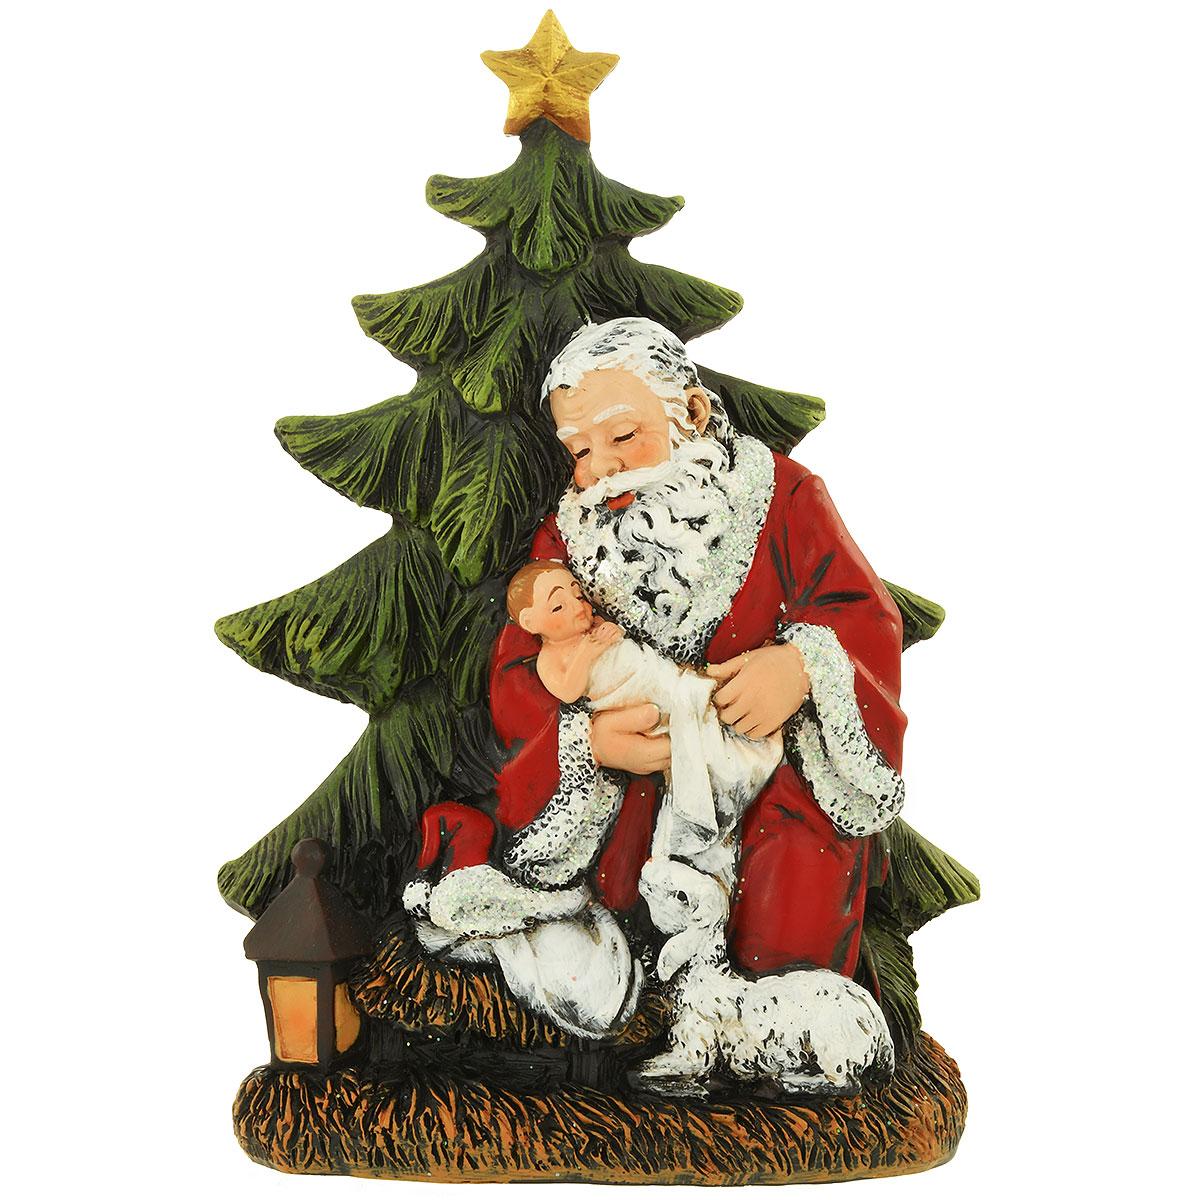 Kneeling Santa With Tree Figure